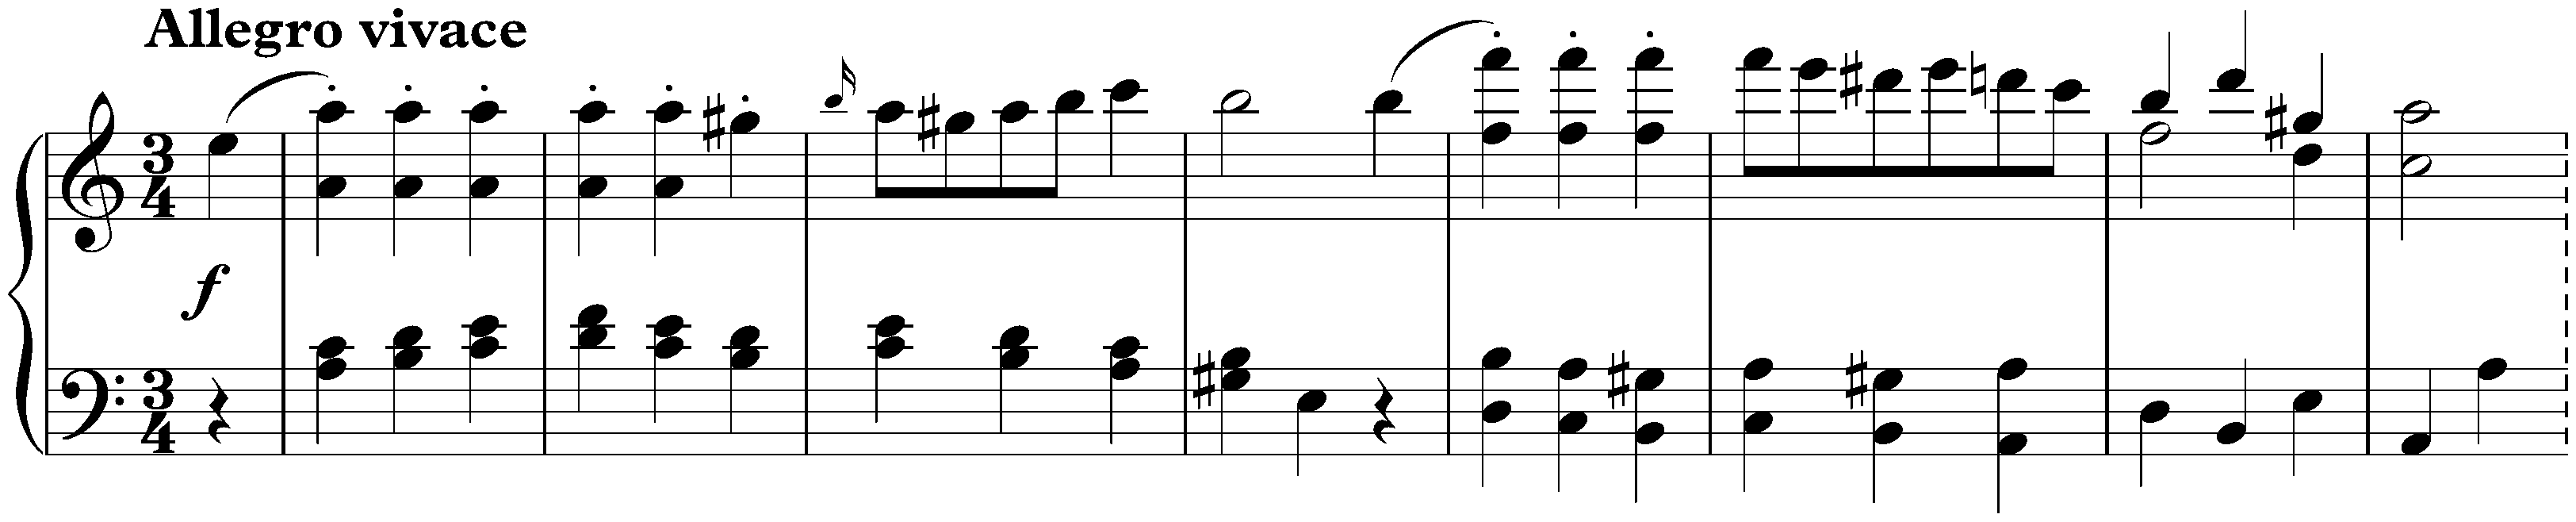 Sonata in C major, D 279; 3. Menuetto: Allegro vivace